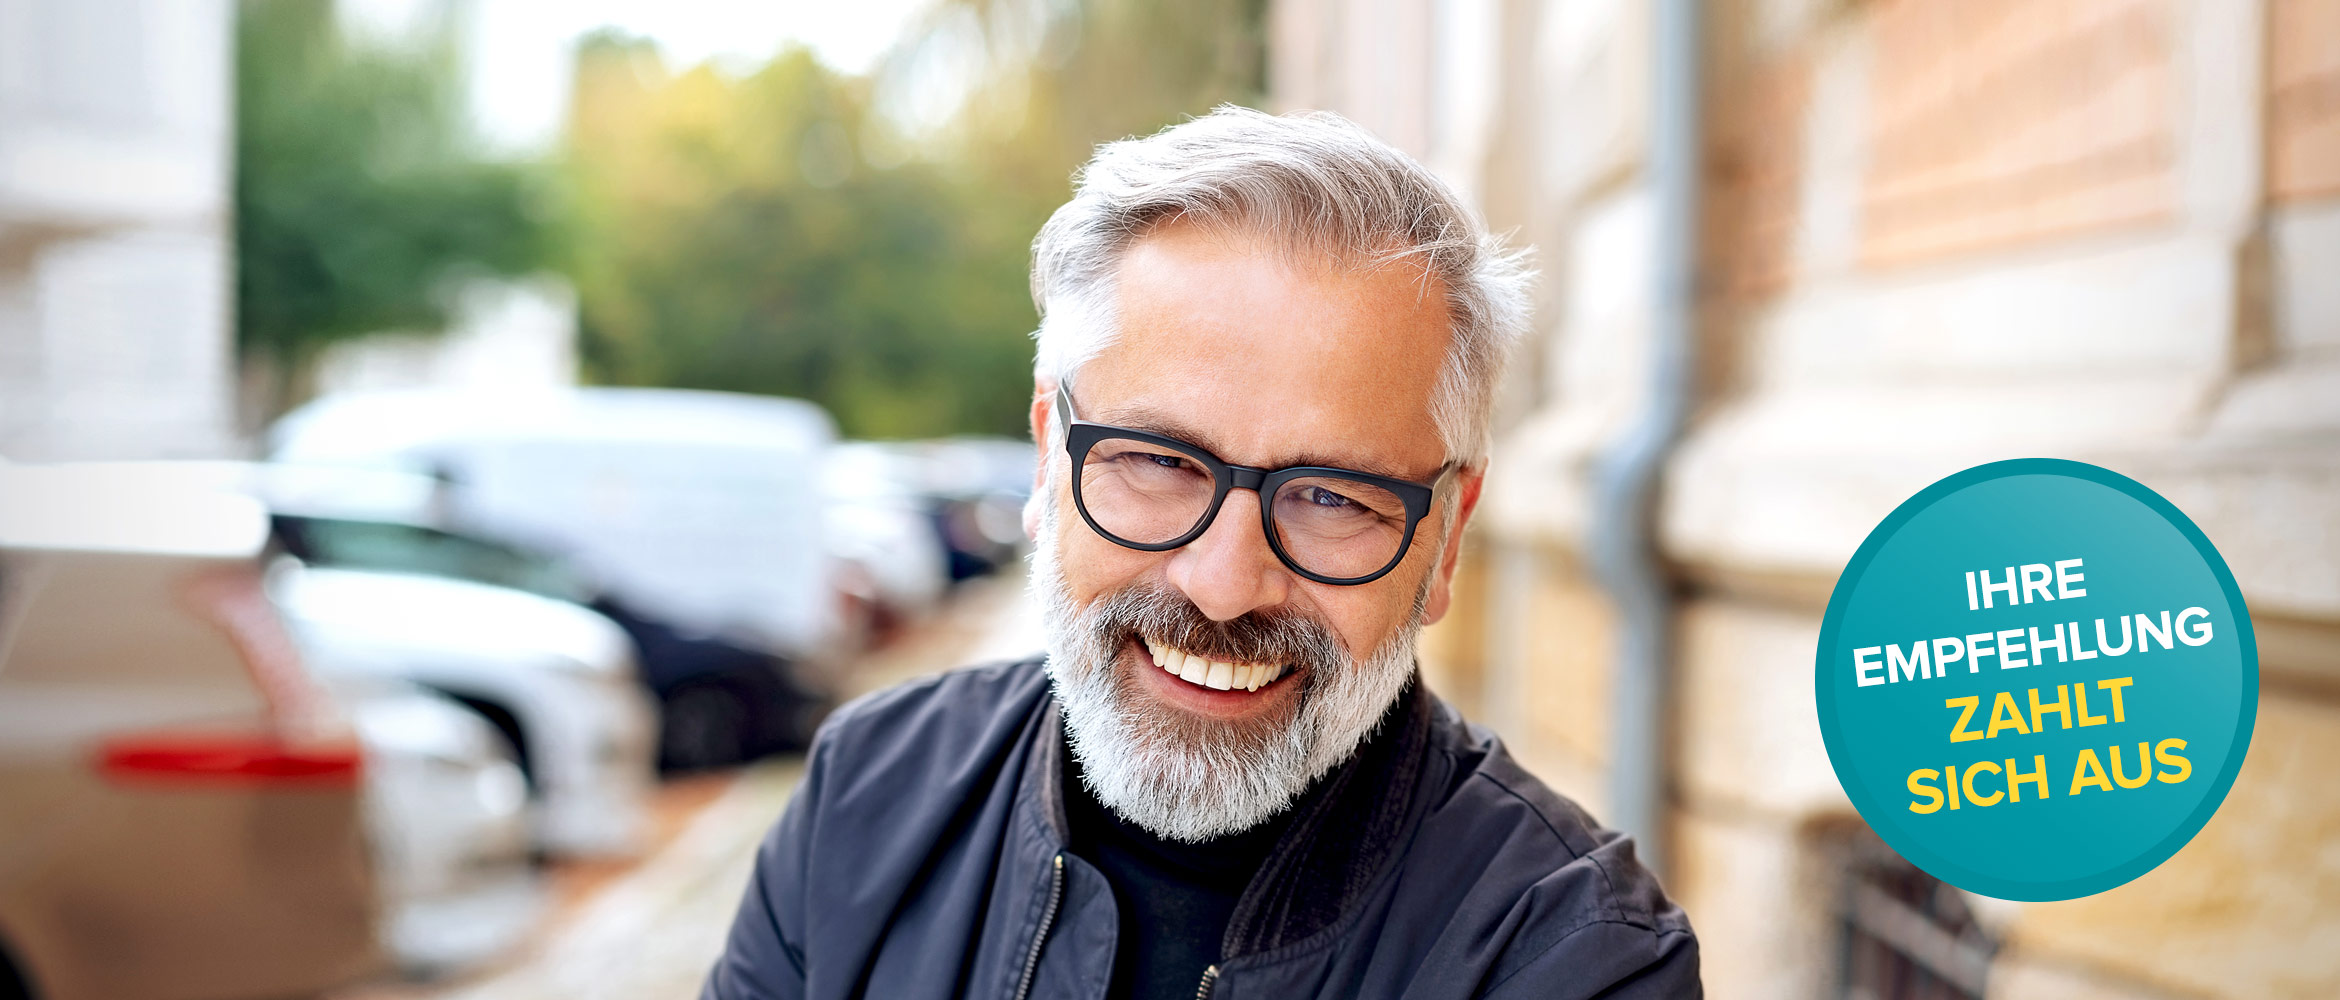 Ein fröhlicher Mann mit grauem Bart und Brille lächelt in die Kamera, auf der rechten Seite steht 'Ihre Empfehlung zahlt sich aus' über einem türkisen Banner.